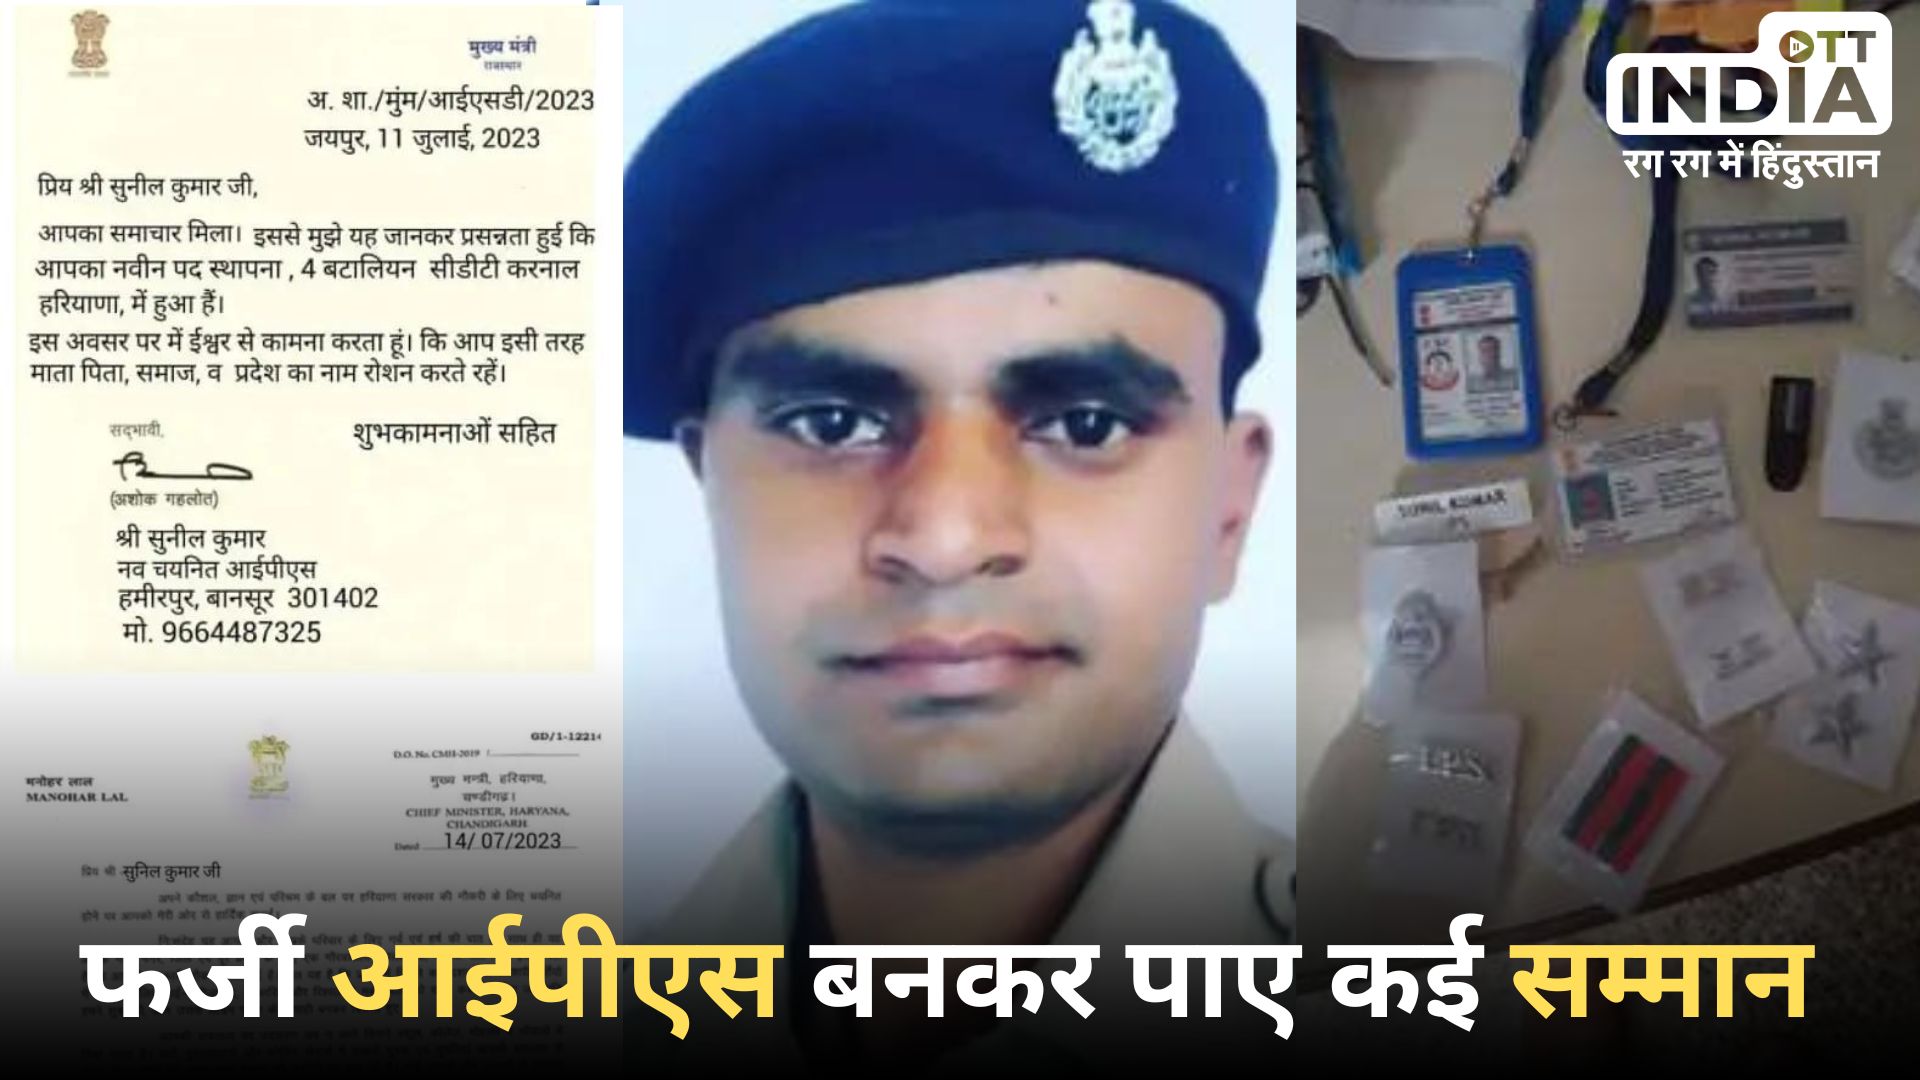 Udaipur Fake IPS Officer: फ़र्ज़ी आई पी एस की खुली पोल, खुद को बताया सीबीआई ऑफिसर, कई जगह हुआ सम्मानित, सगाई भी की